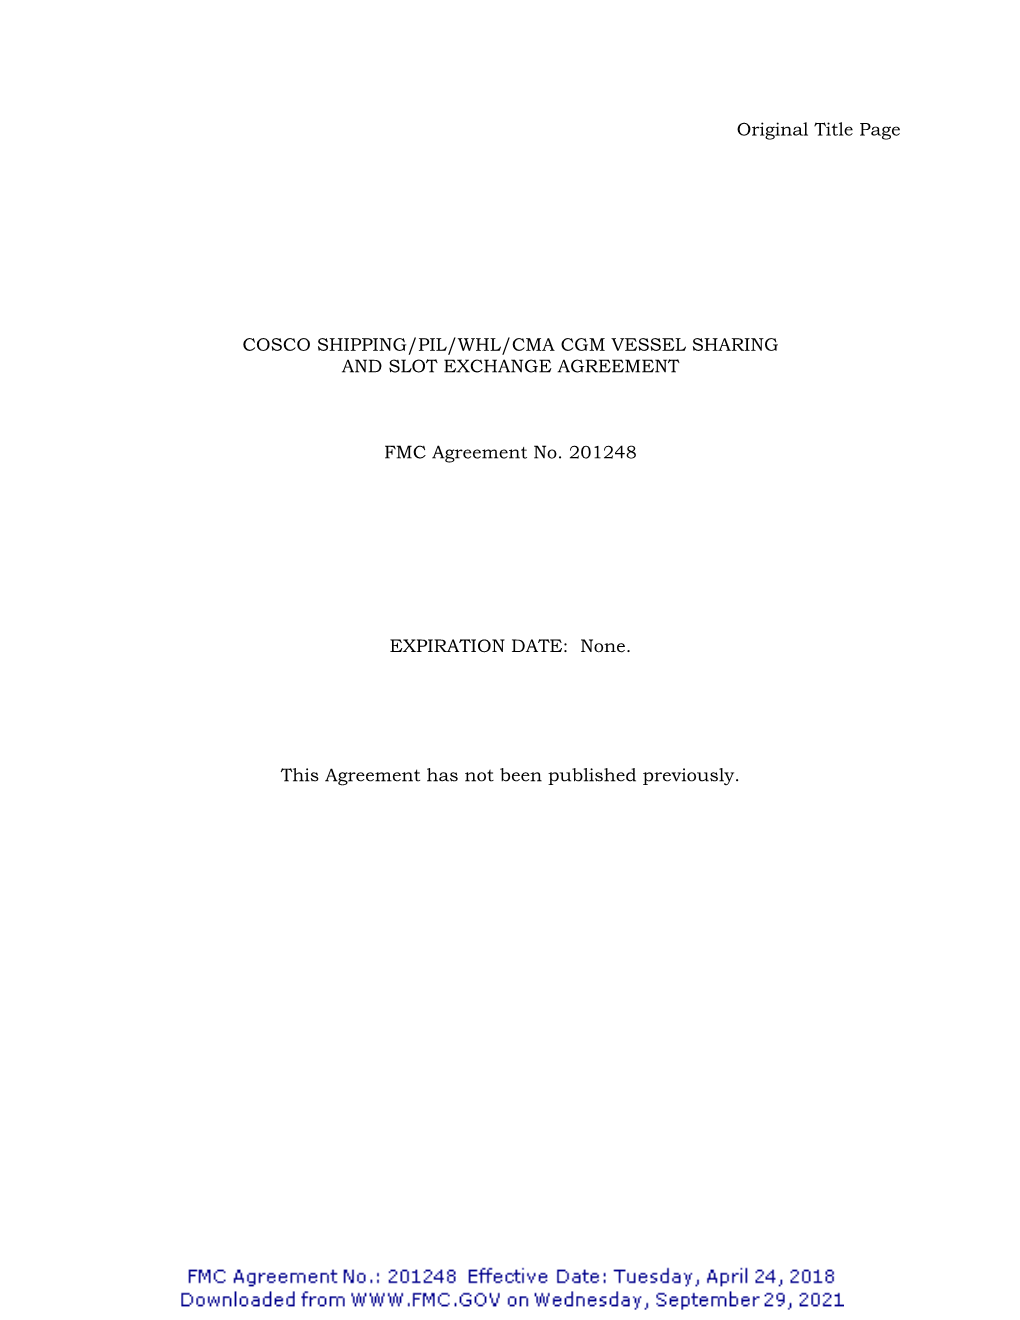 Original Title Page COSCO SHIPPING/PIL/WHL/CMA CGM VESSEL